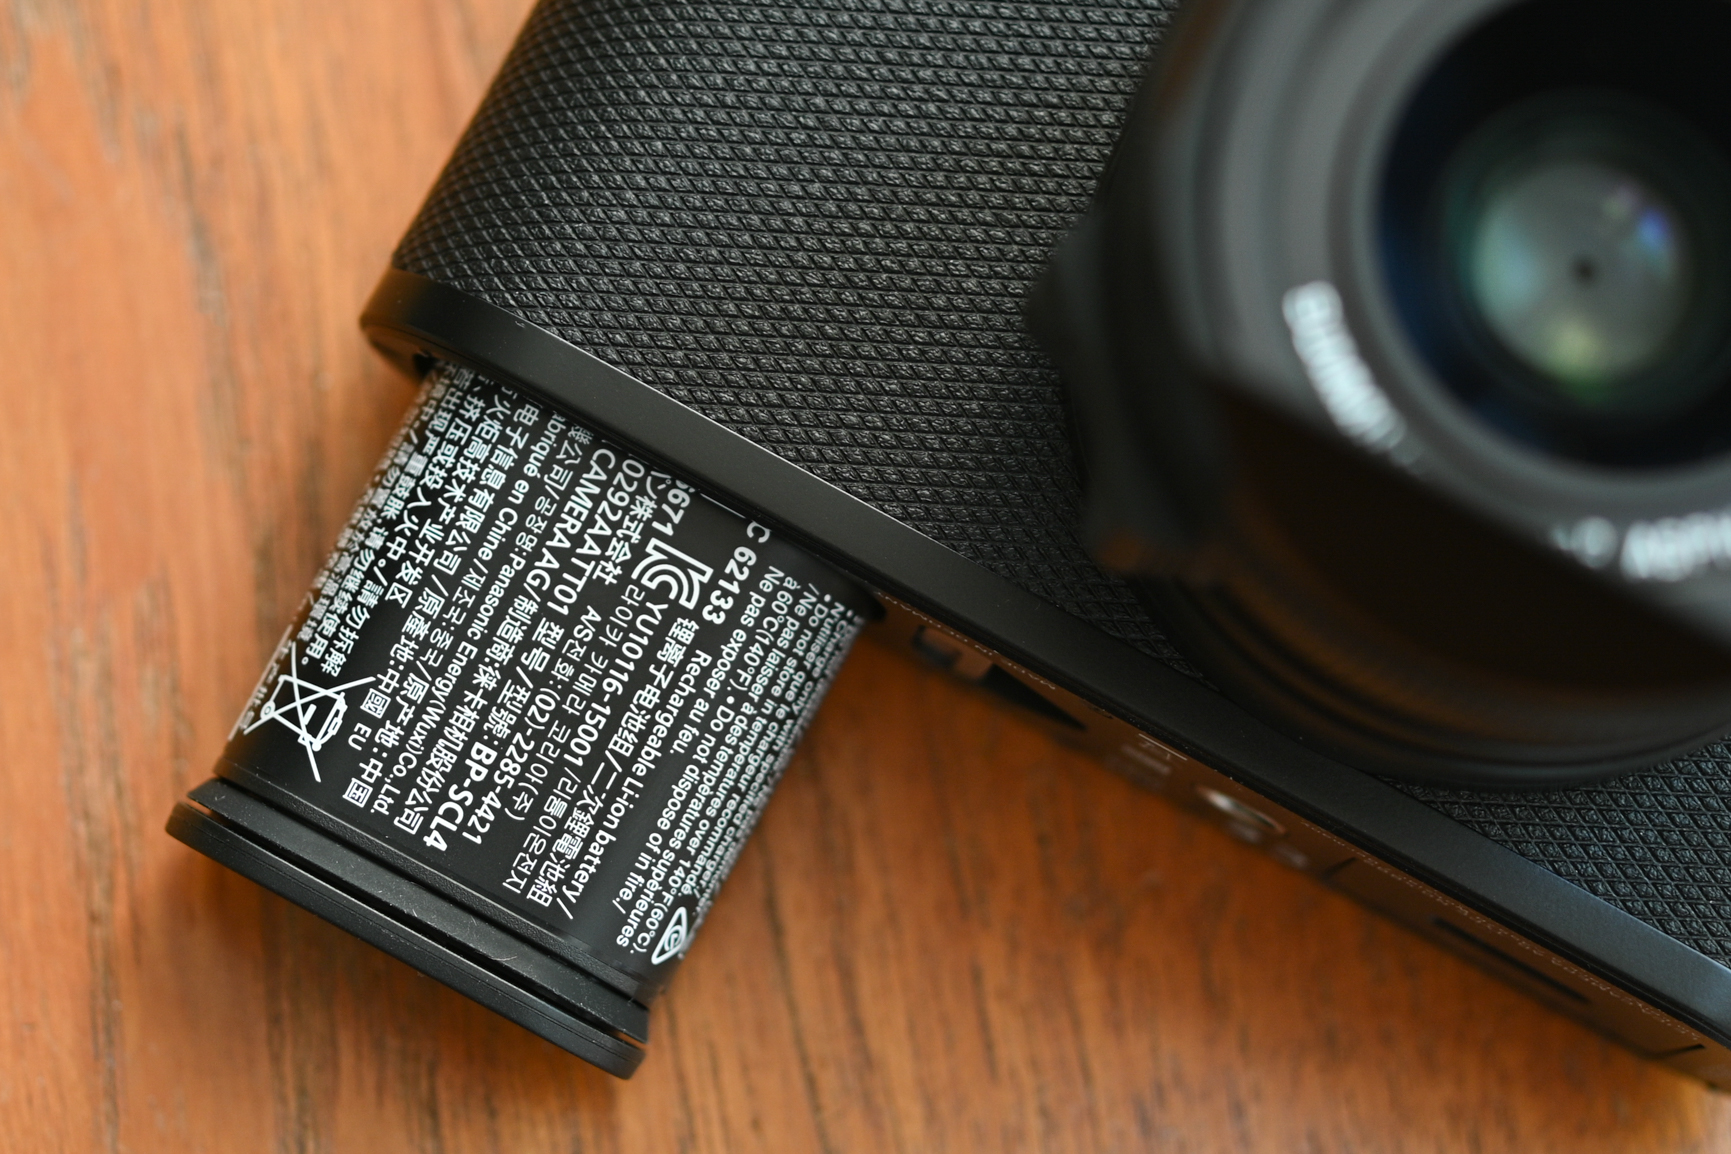 Leica Q2 battery